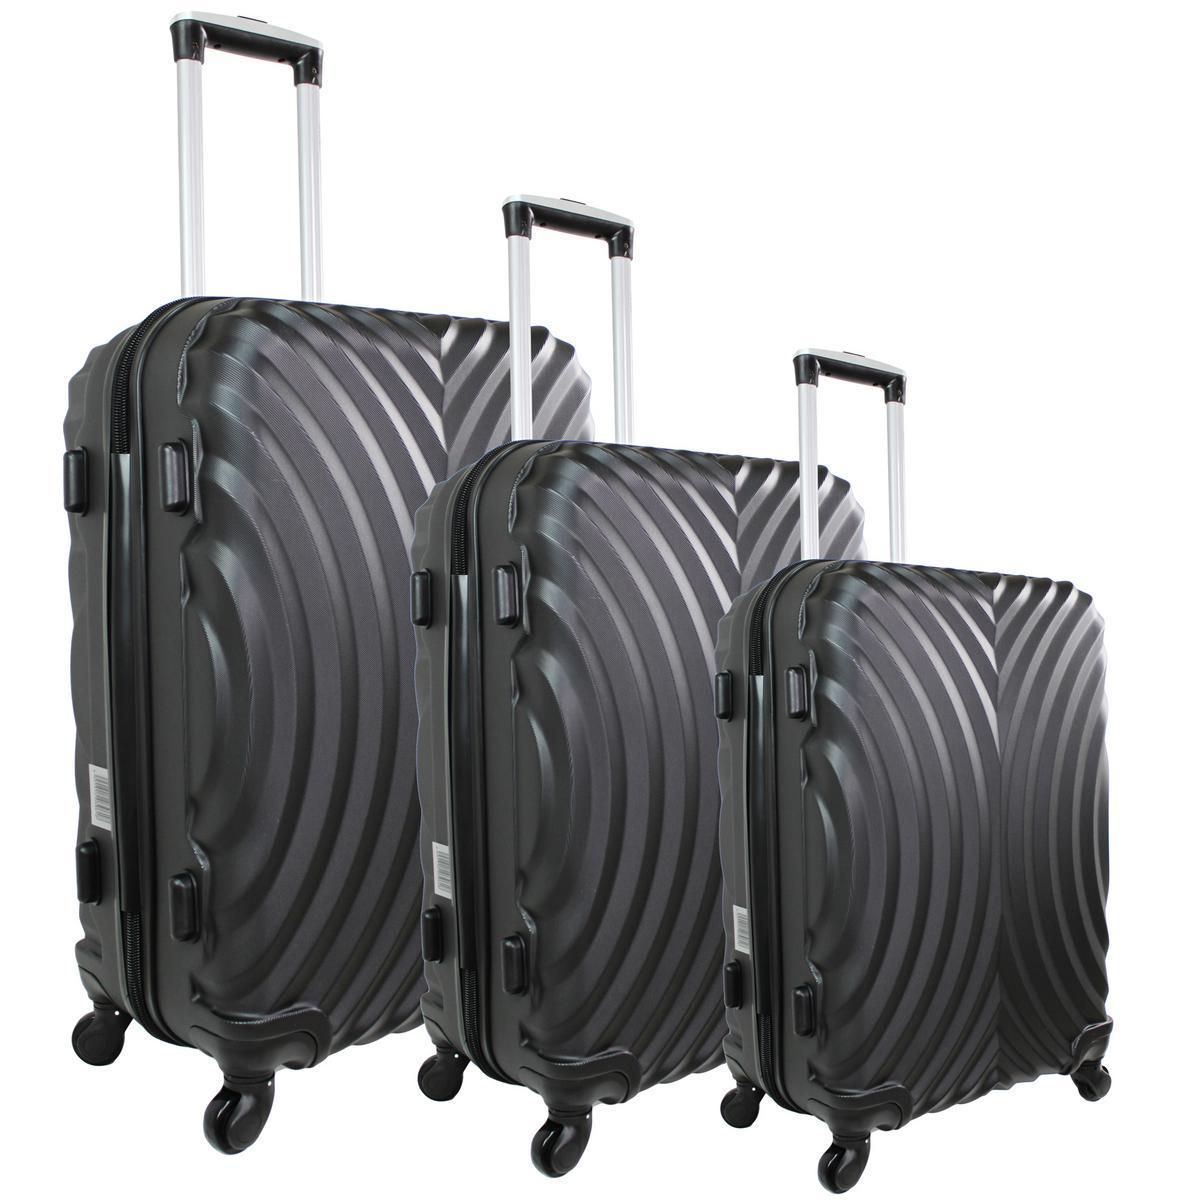 3 valises rigides - Abs - Différentes tailles - Noir